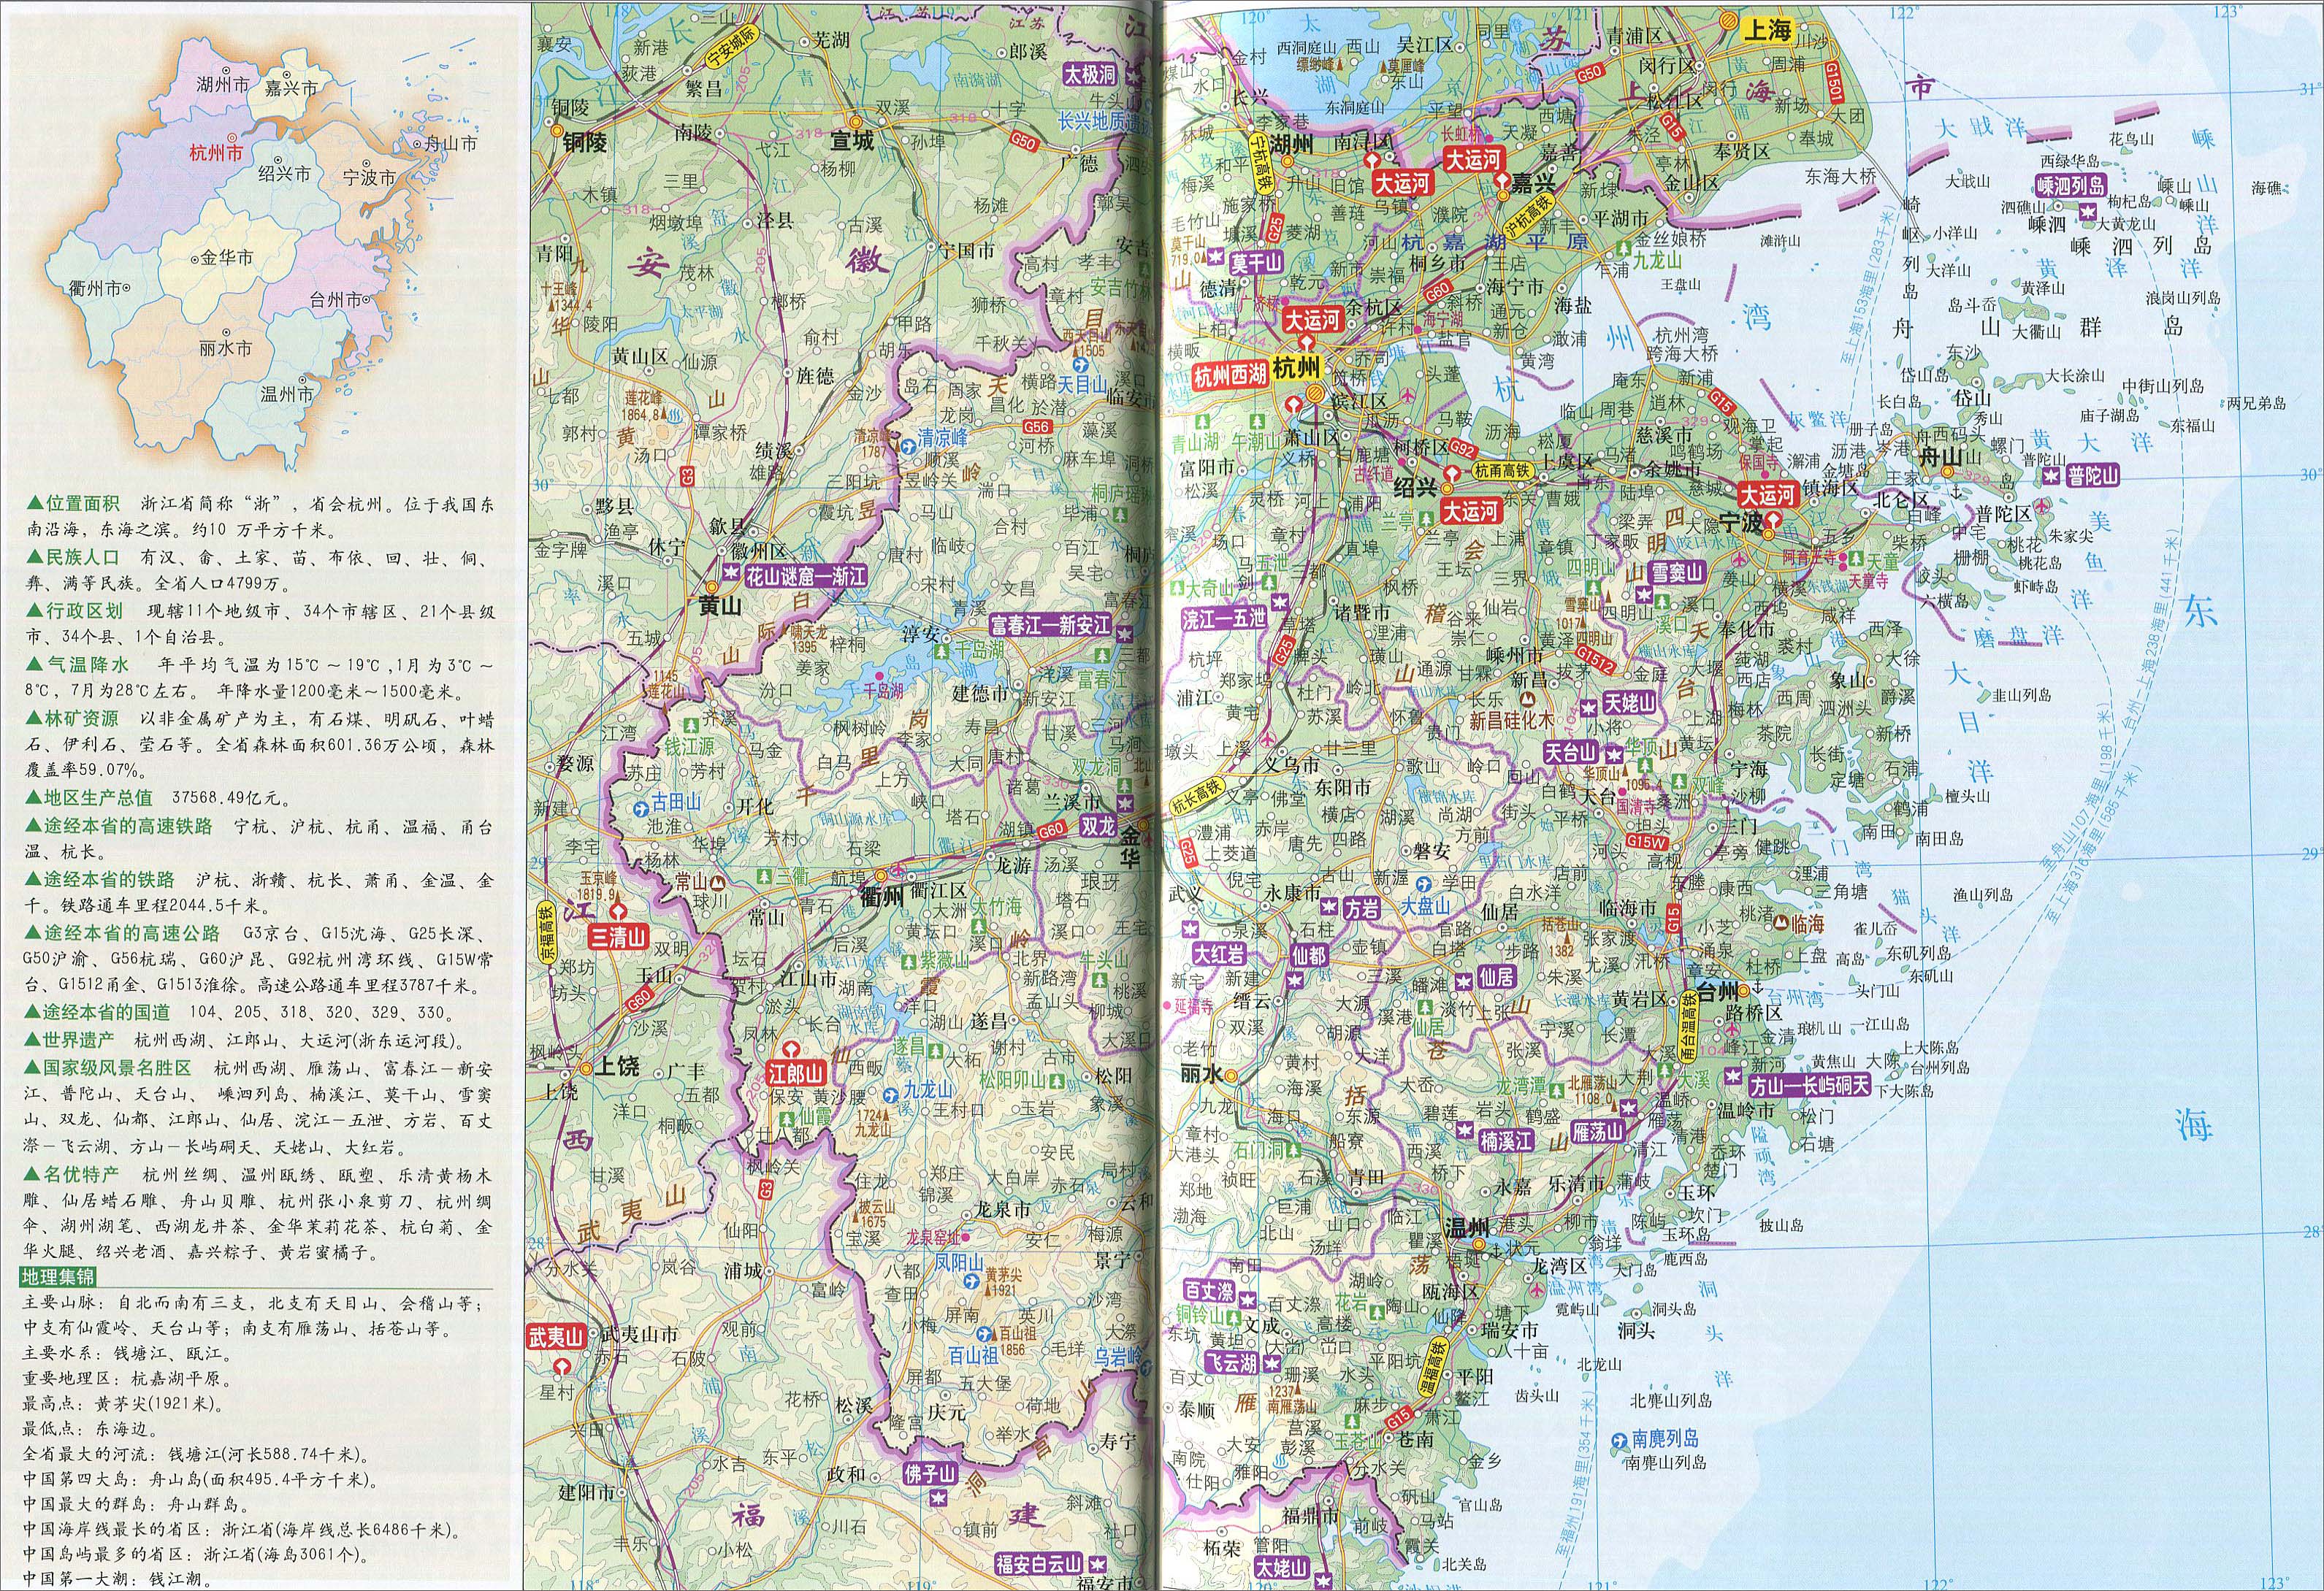 陕西  甘肃  宁夏  新疆  青海  西藏  香港  澳门  台湾 上一幅地图图片